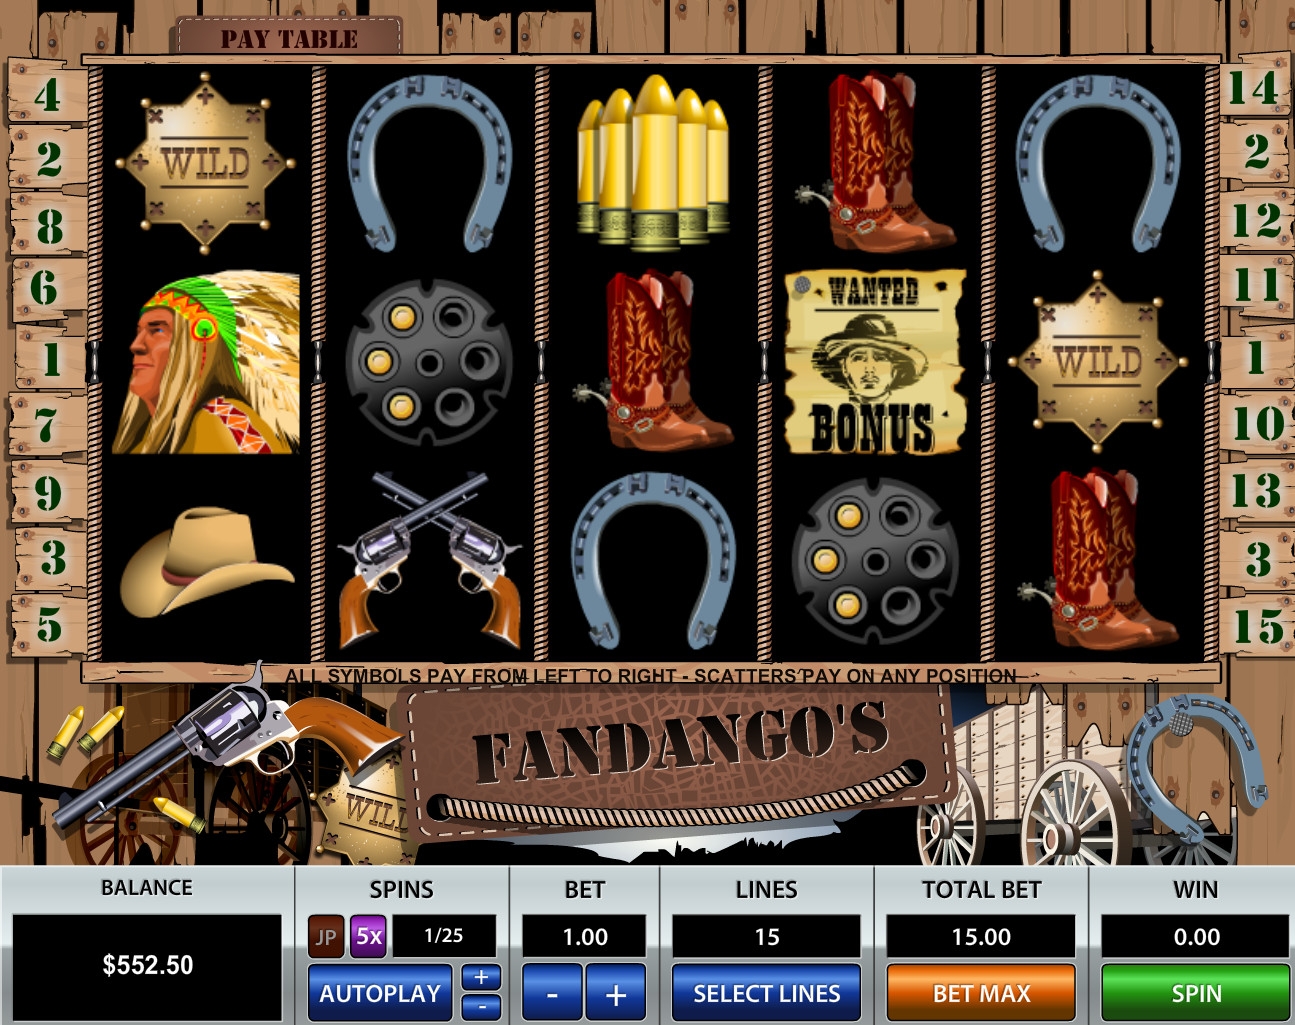 Fandango’s (Fandango’s) from category Slots